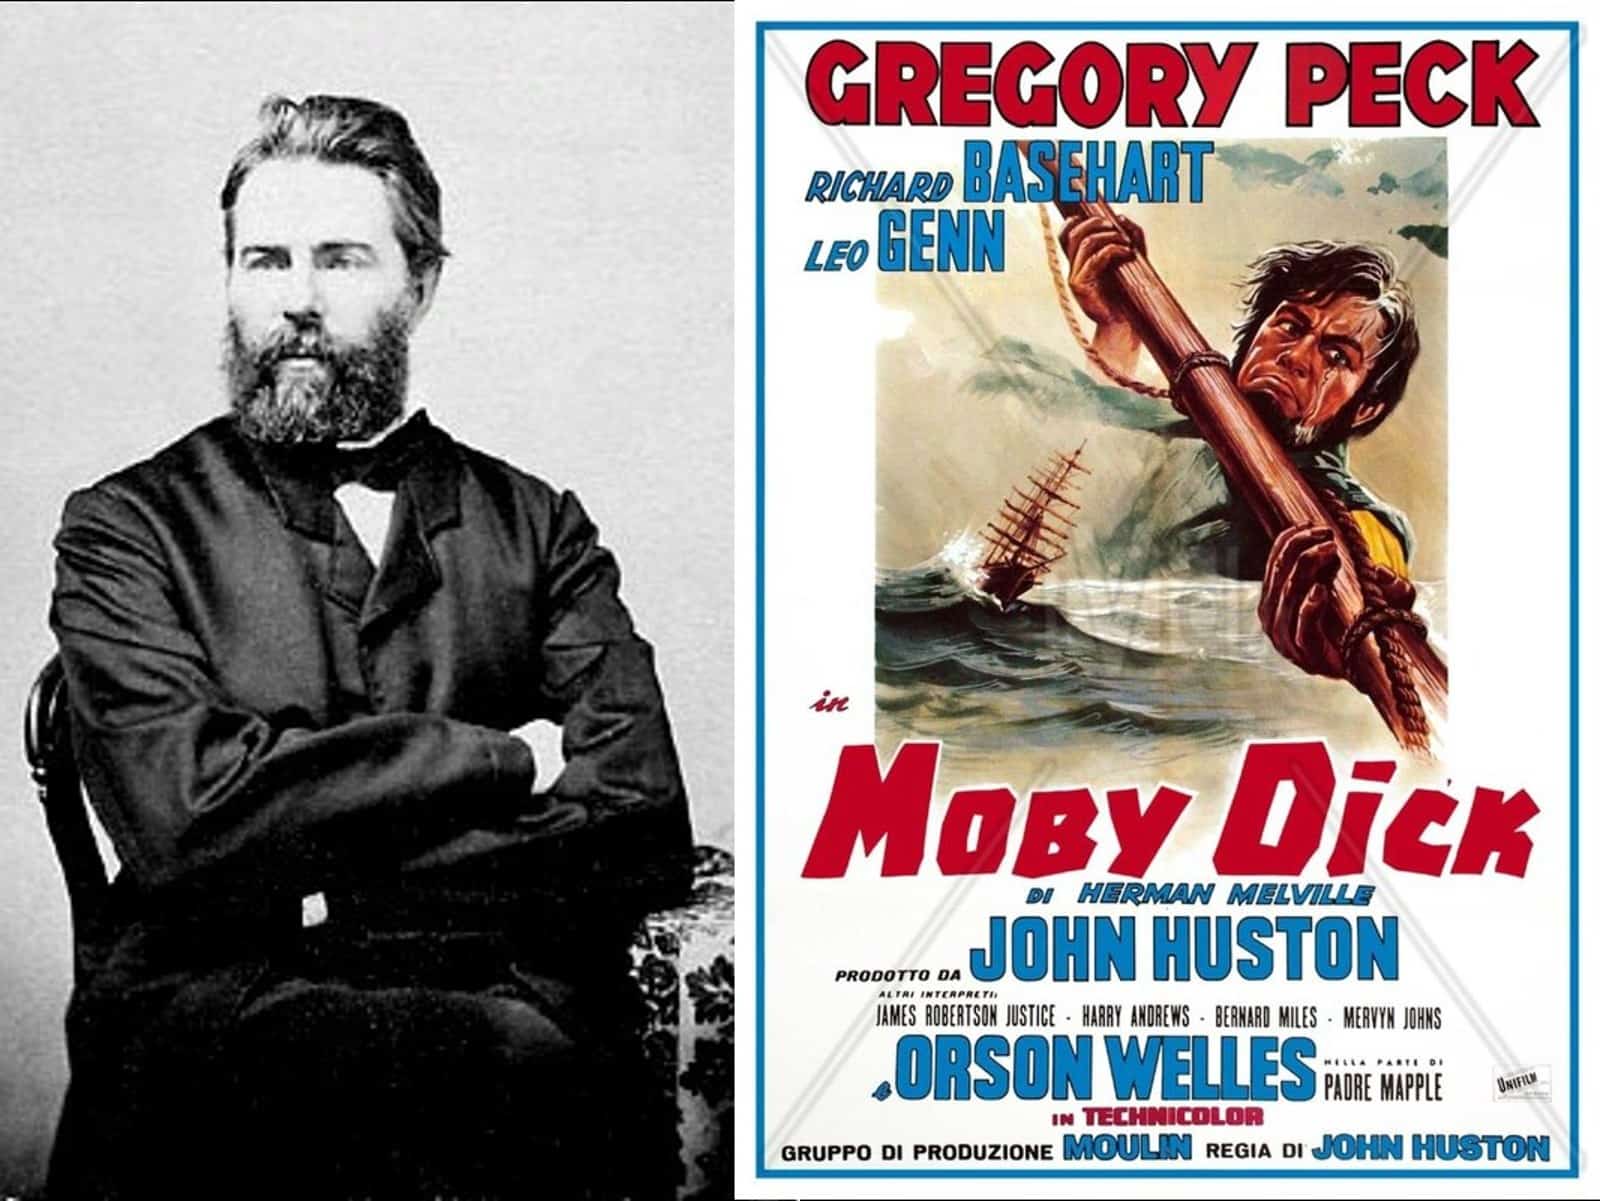 Herman Melville und Filmplakat der Verfilmung mit Gregory Peck